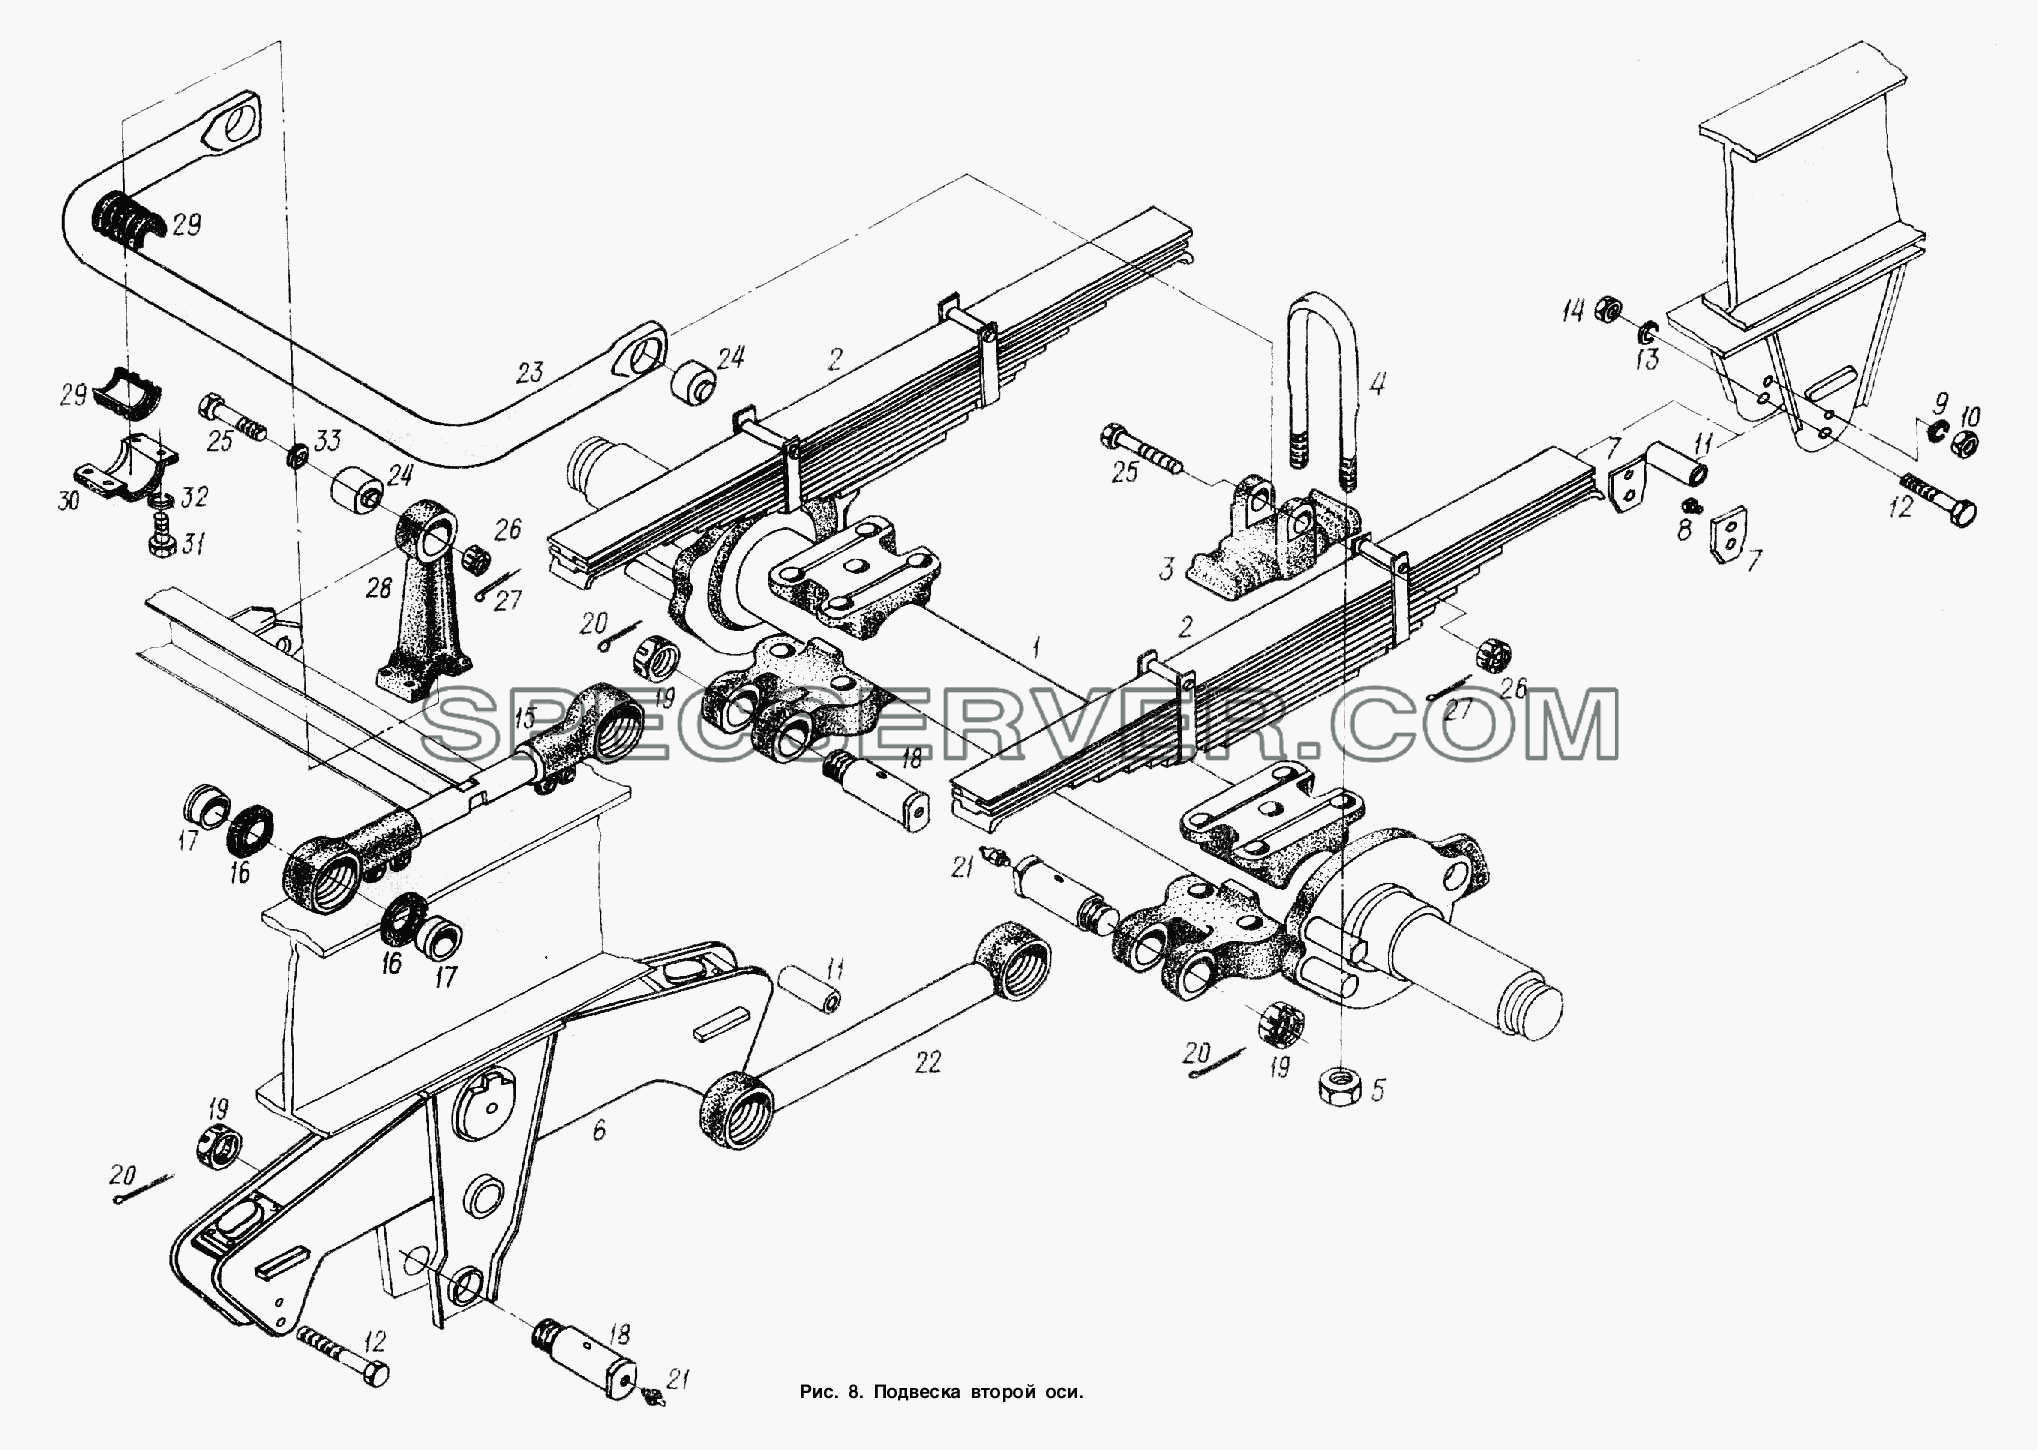 Подвеска. Установка второй оси для МАЗ-938662 (список запасных частей)